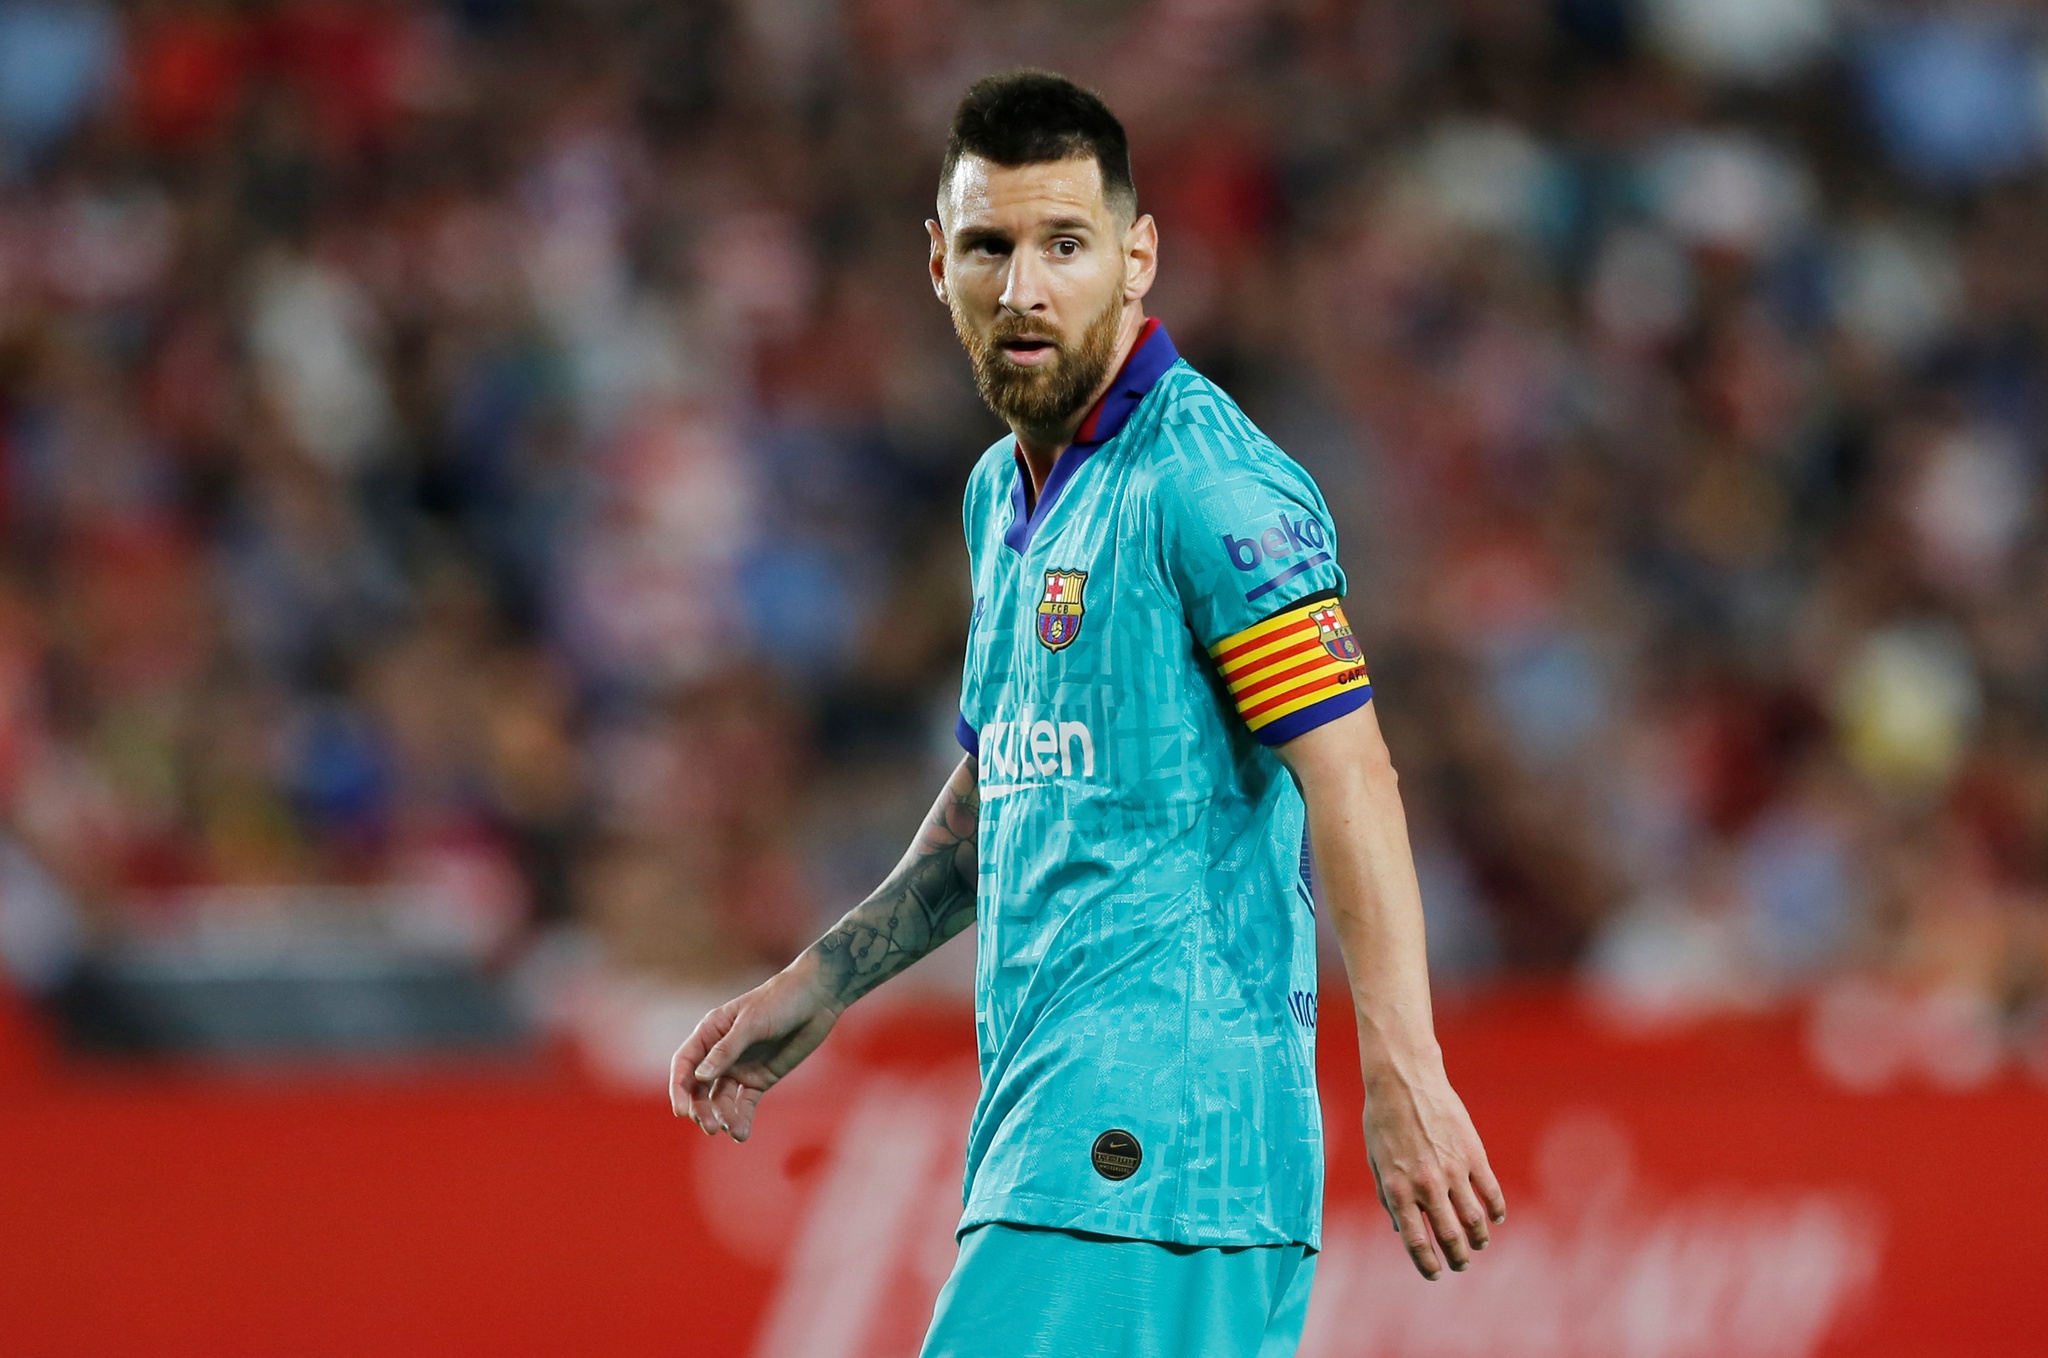 Vida longa a Leo Messi Uma edição especial do jogo está agora